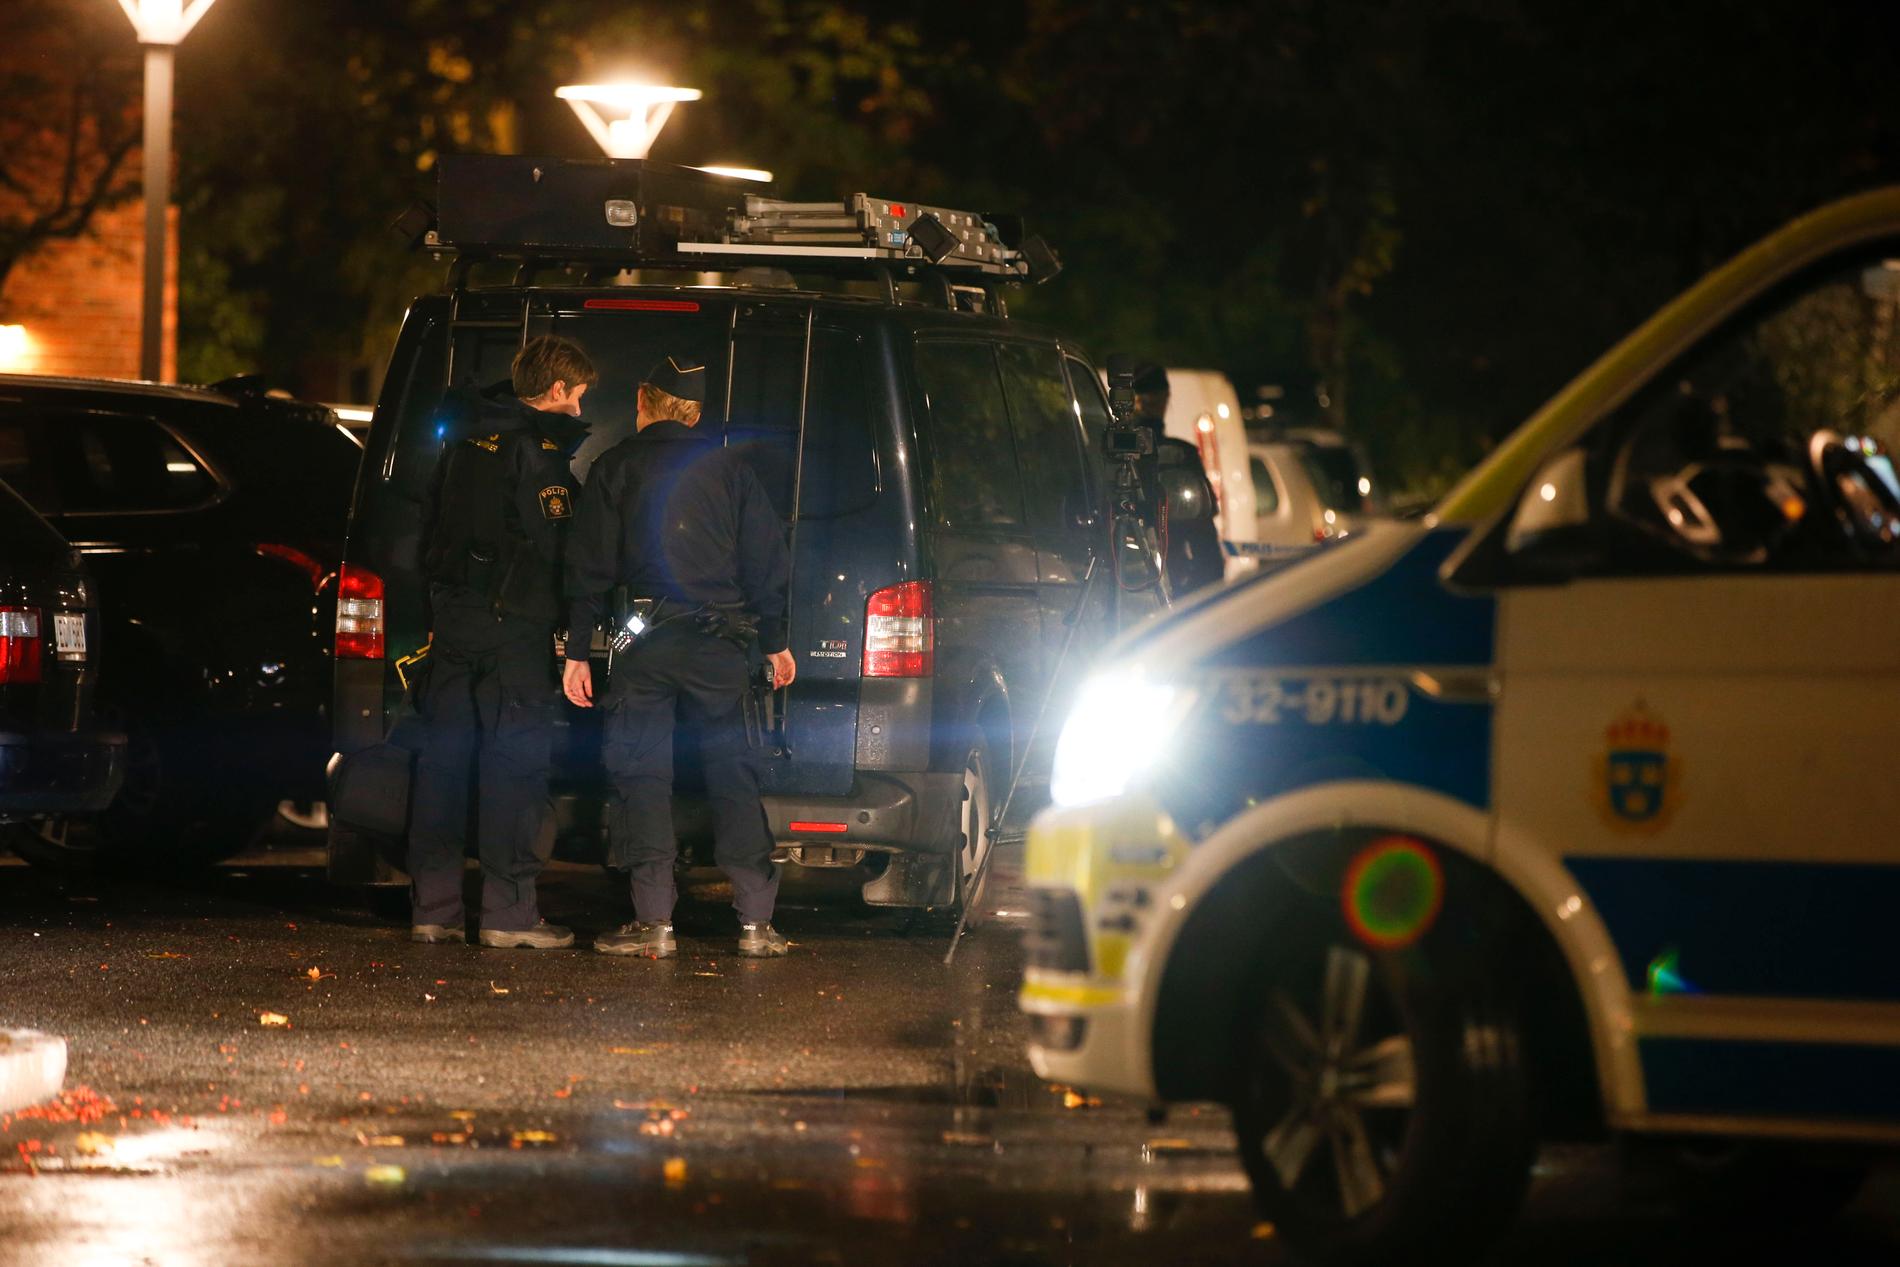 En man hittades skadad utomhus i Farsta i södra Stockholm, efter en misstänkt skottlossning. Mannen avled senare på sjukhus.